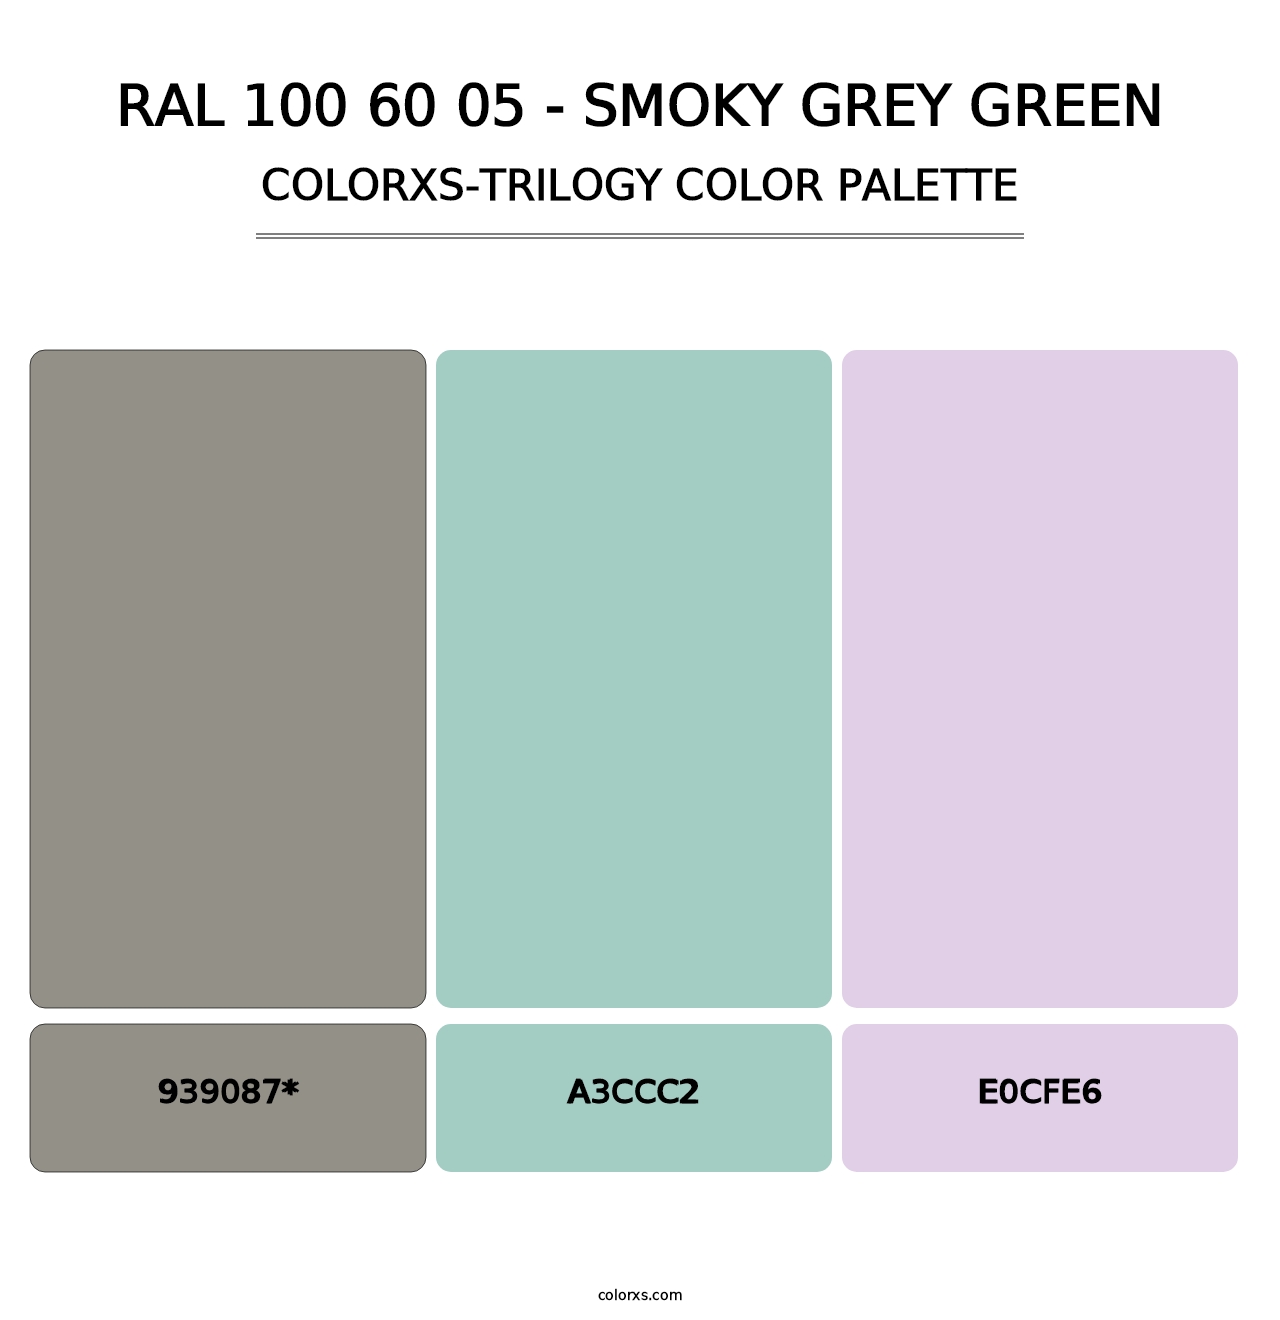 RAL 100 60 05 - Smoky Grey Green - Colorxs Trilogy Palette